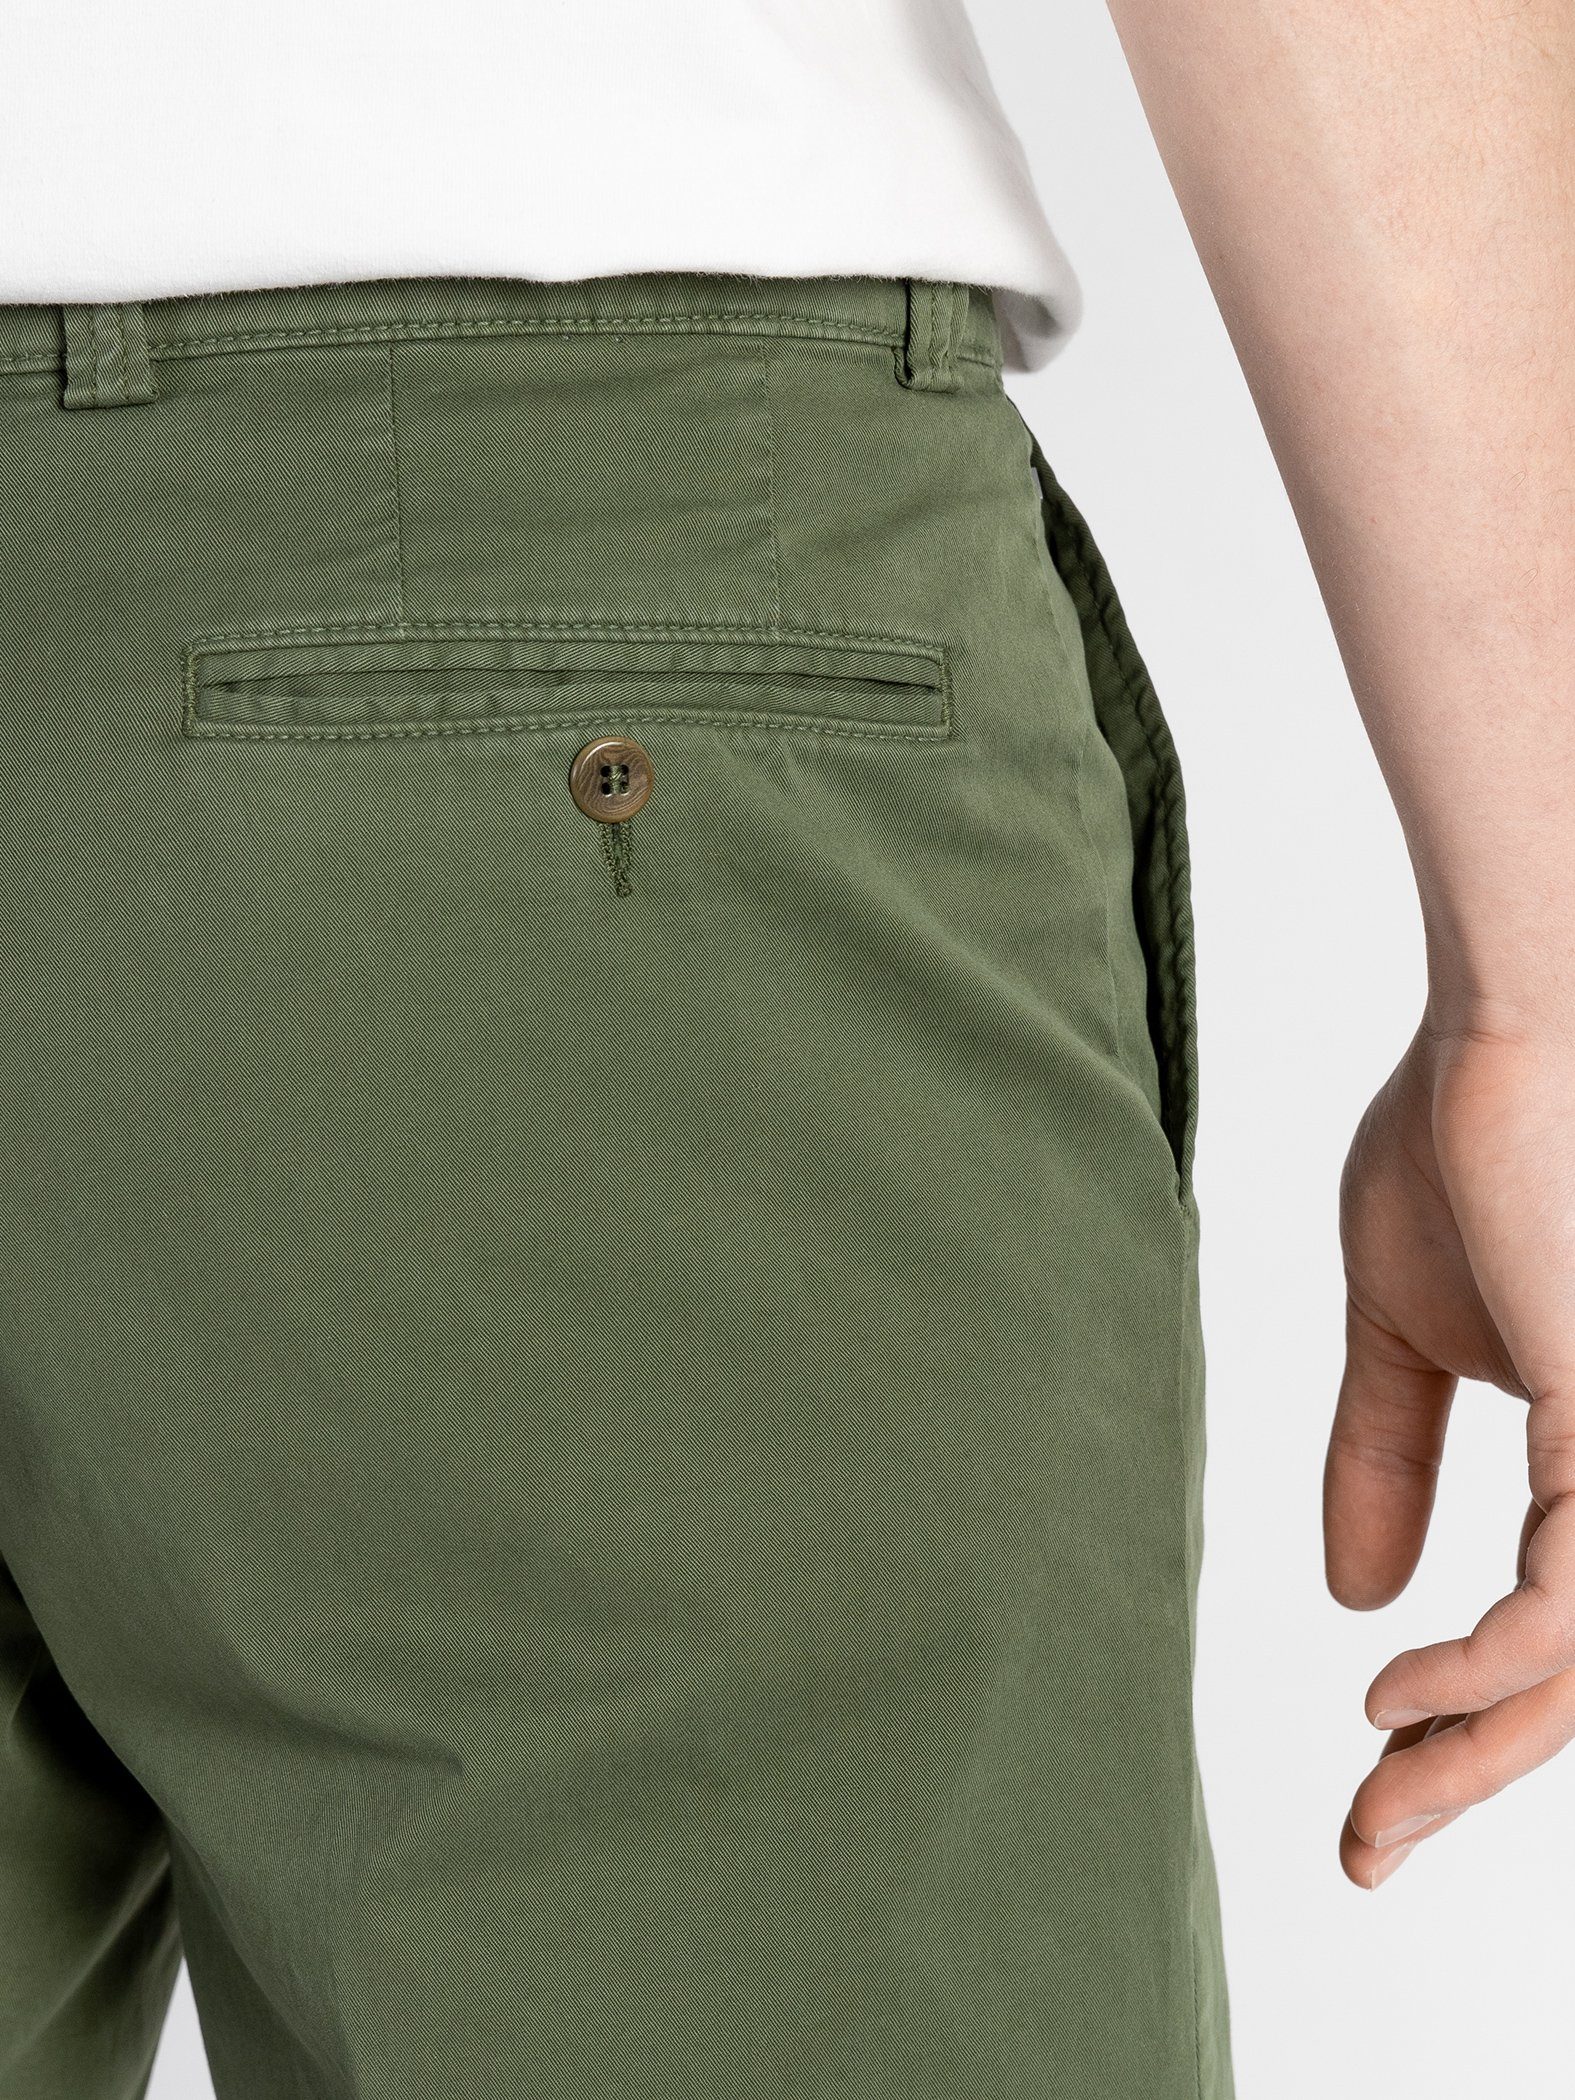 GOTS-zertifiziert Bund, Shorts TwoMates mit Shorts Grün elastischem Farbauswahl,